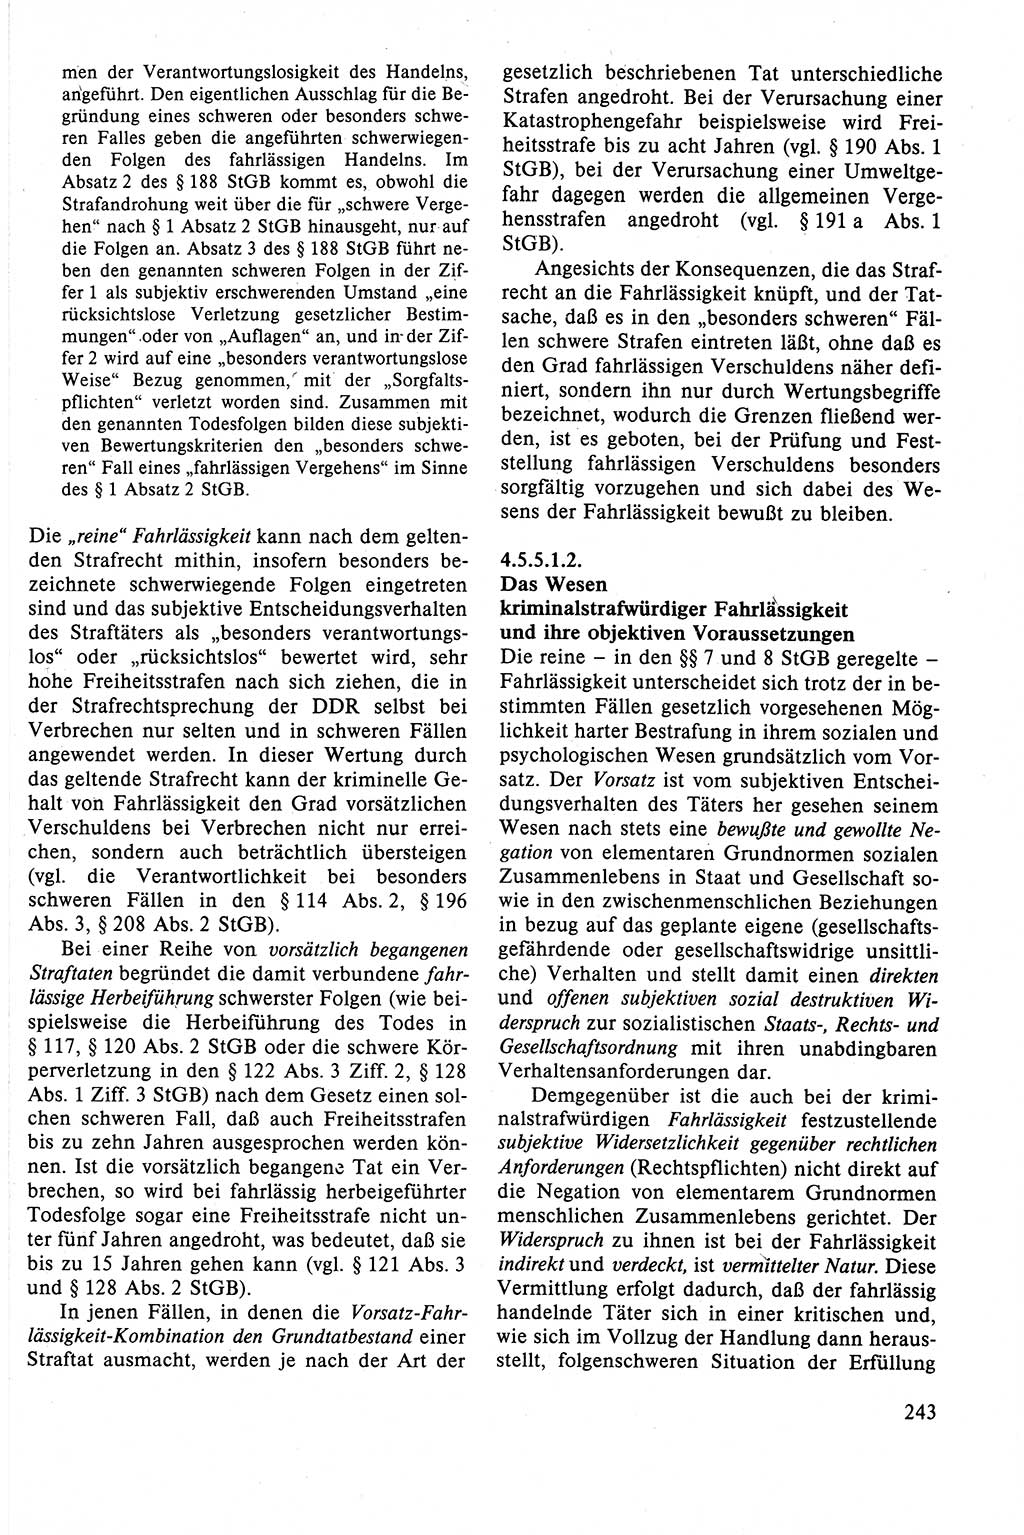 Strafrecht der DDR (Deutsche Demokratische Republik), Lehrbuch 1988, Seite 243 (Strafr. DDR Lb. 1988, S. 243)